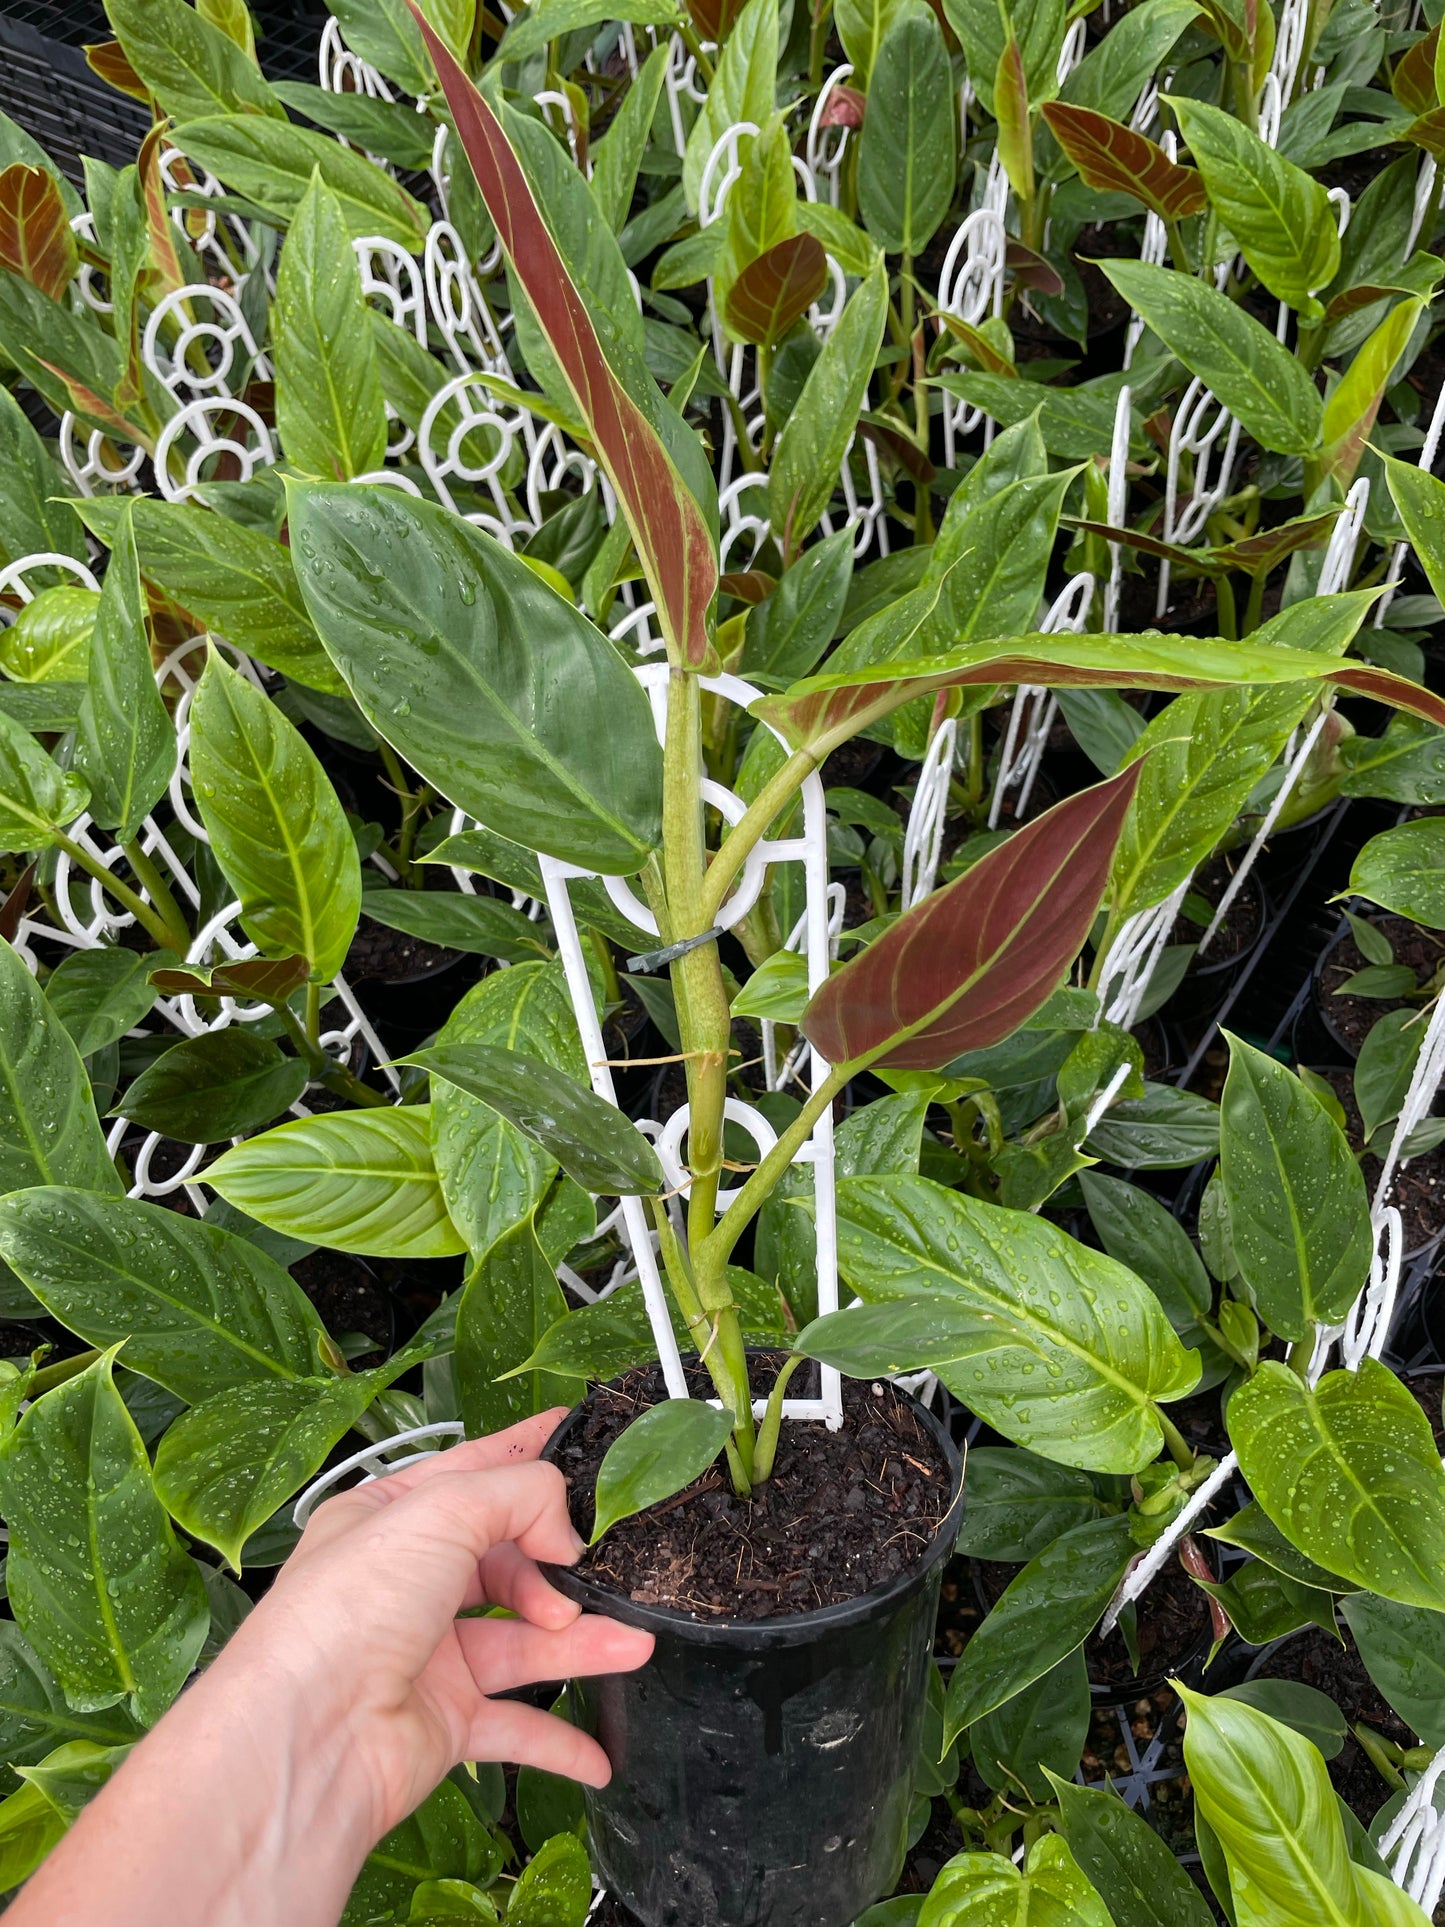 Philodendron subhastatum